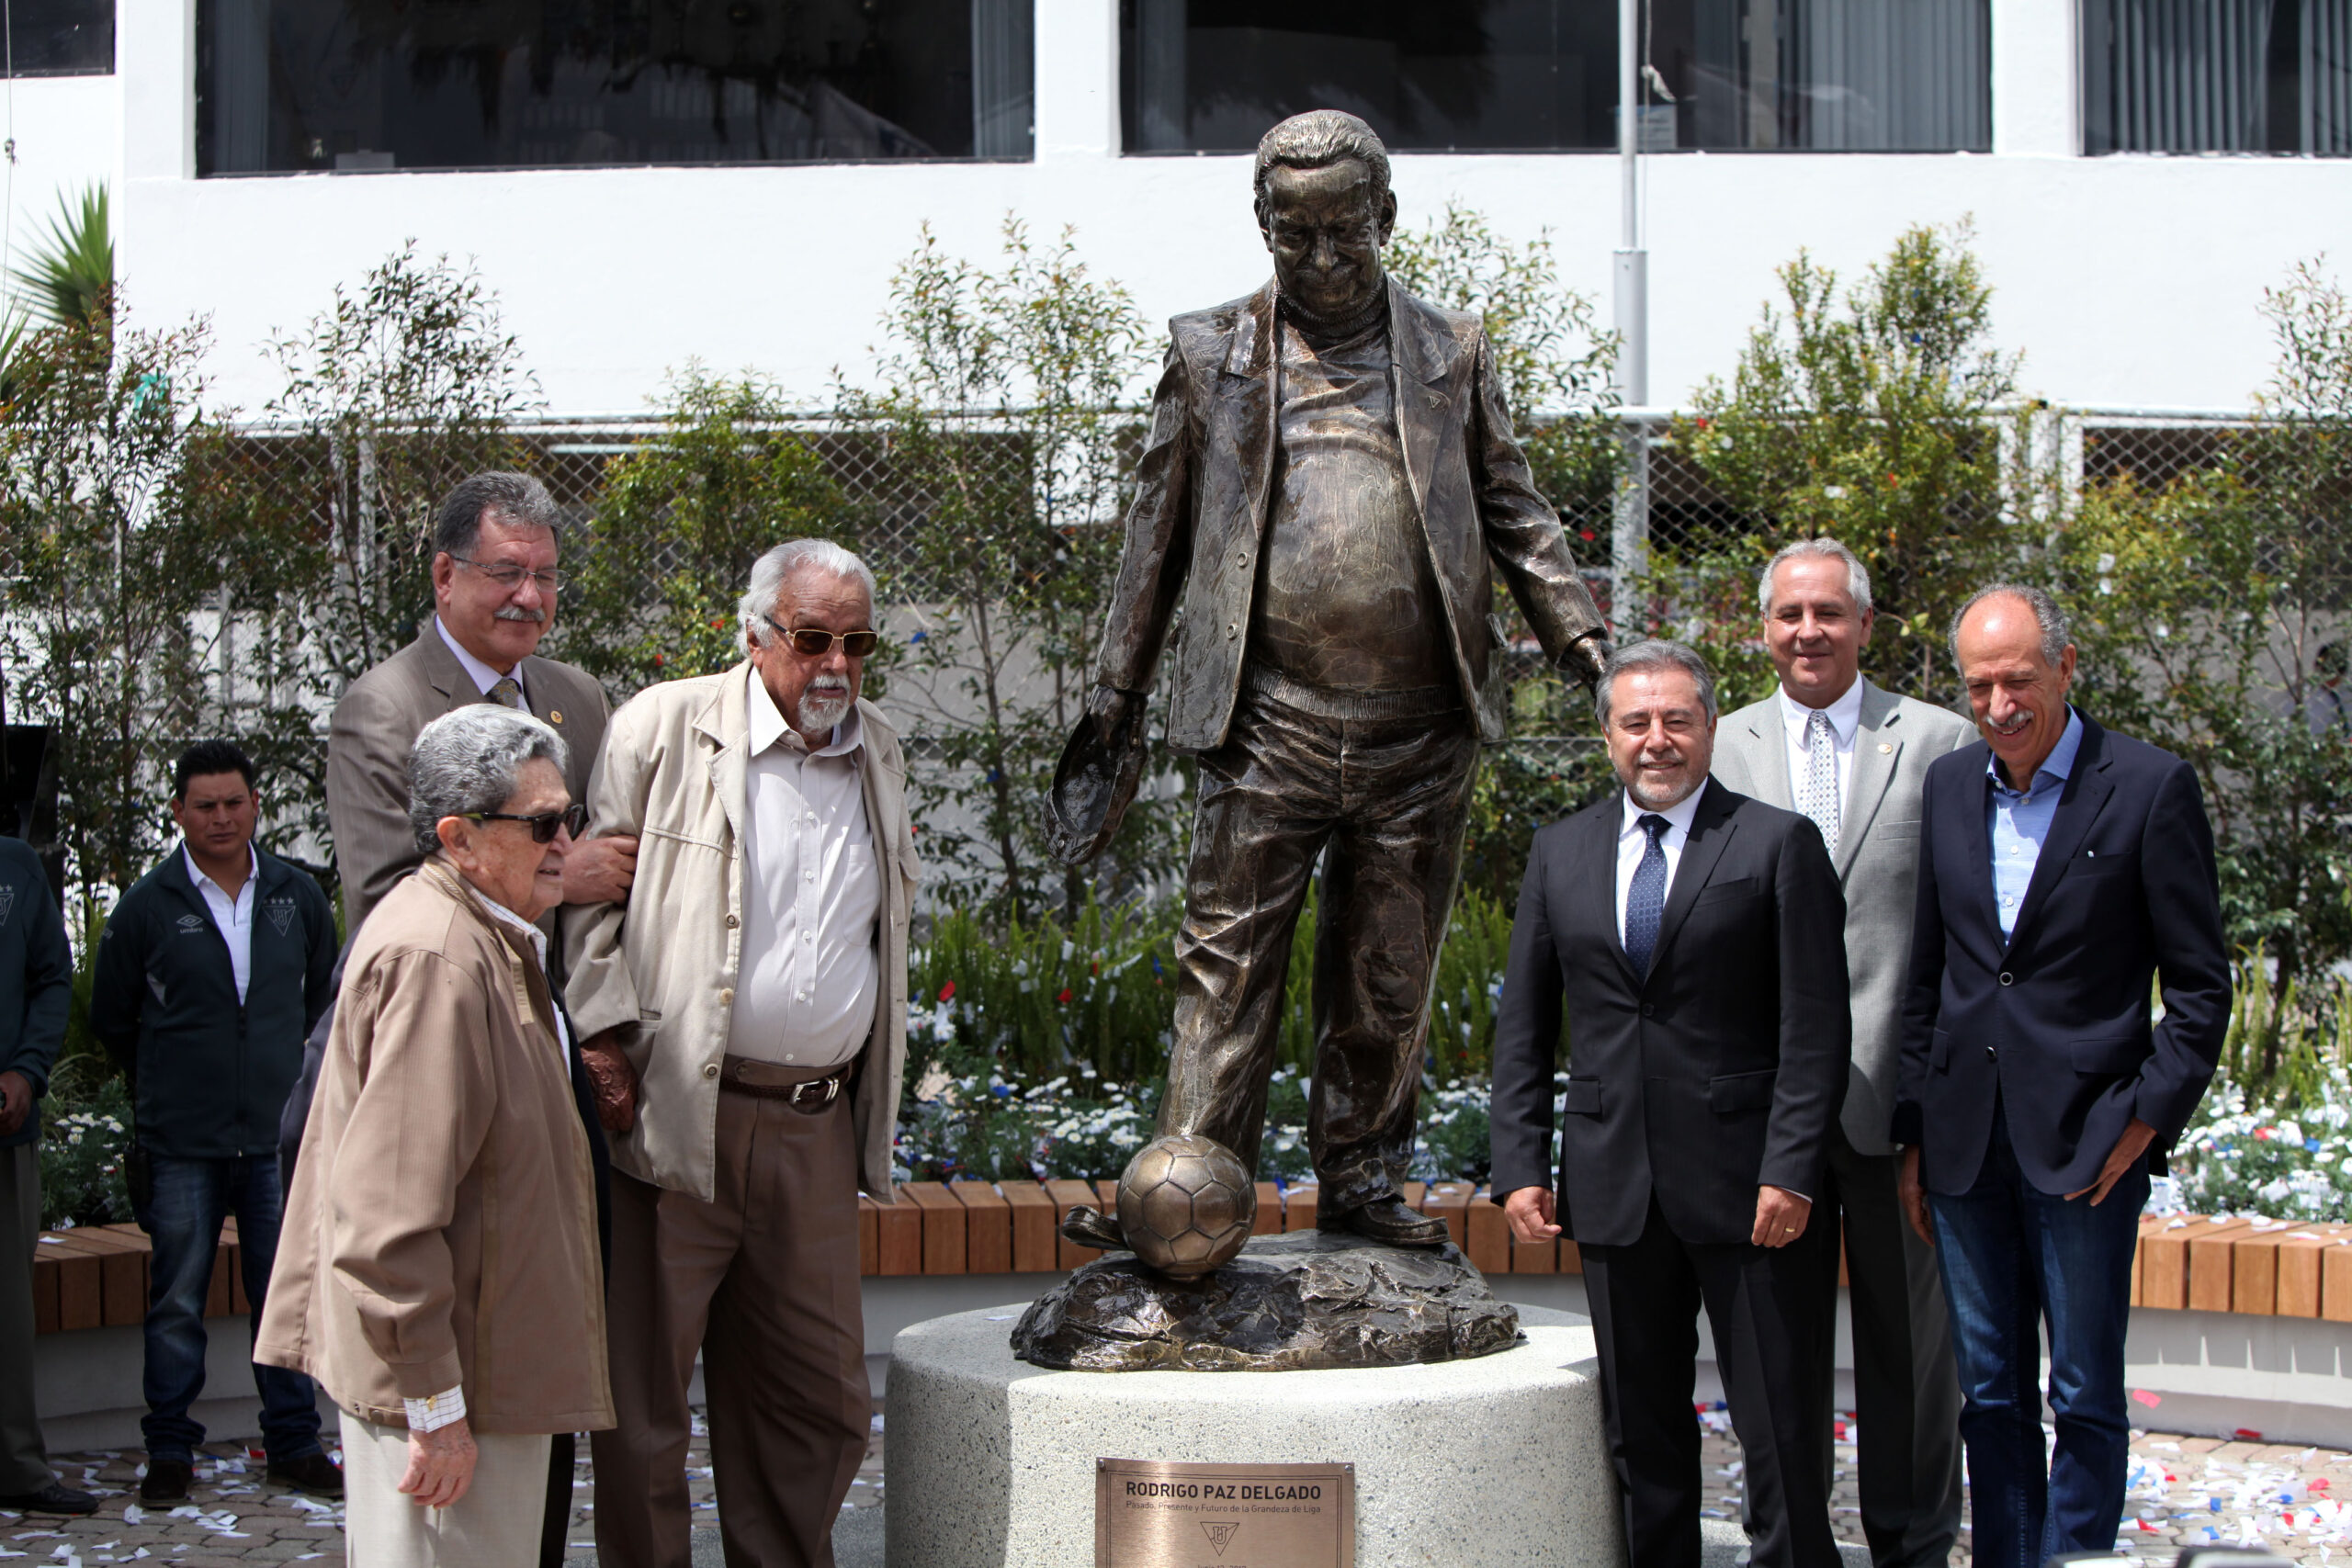 El estadio de Liga recibió el nombre de Rodrigo Paz en el 2017 y se inauguró un monumento del dirigente. Foto: Archivo El Comercio